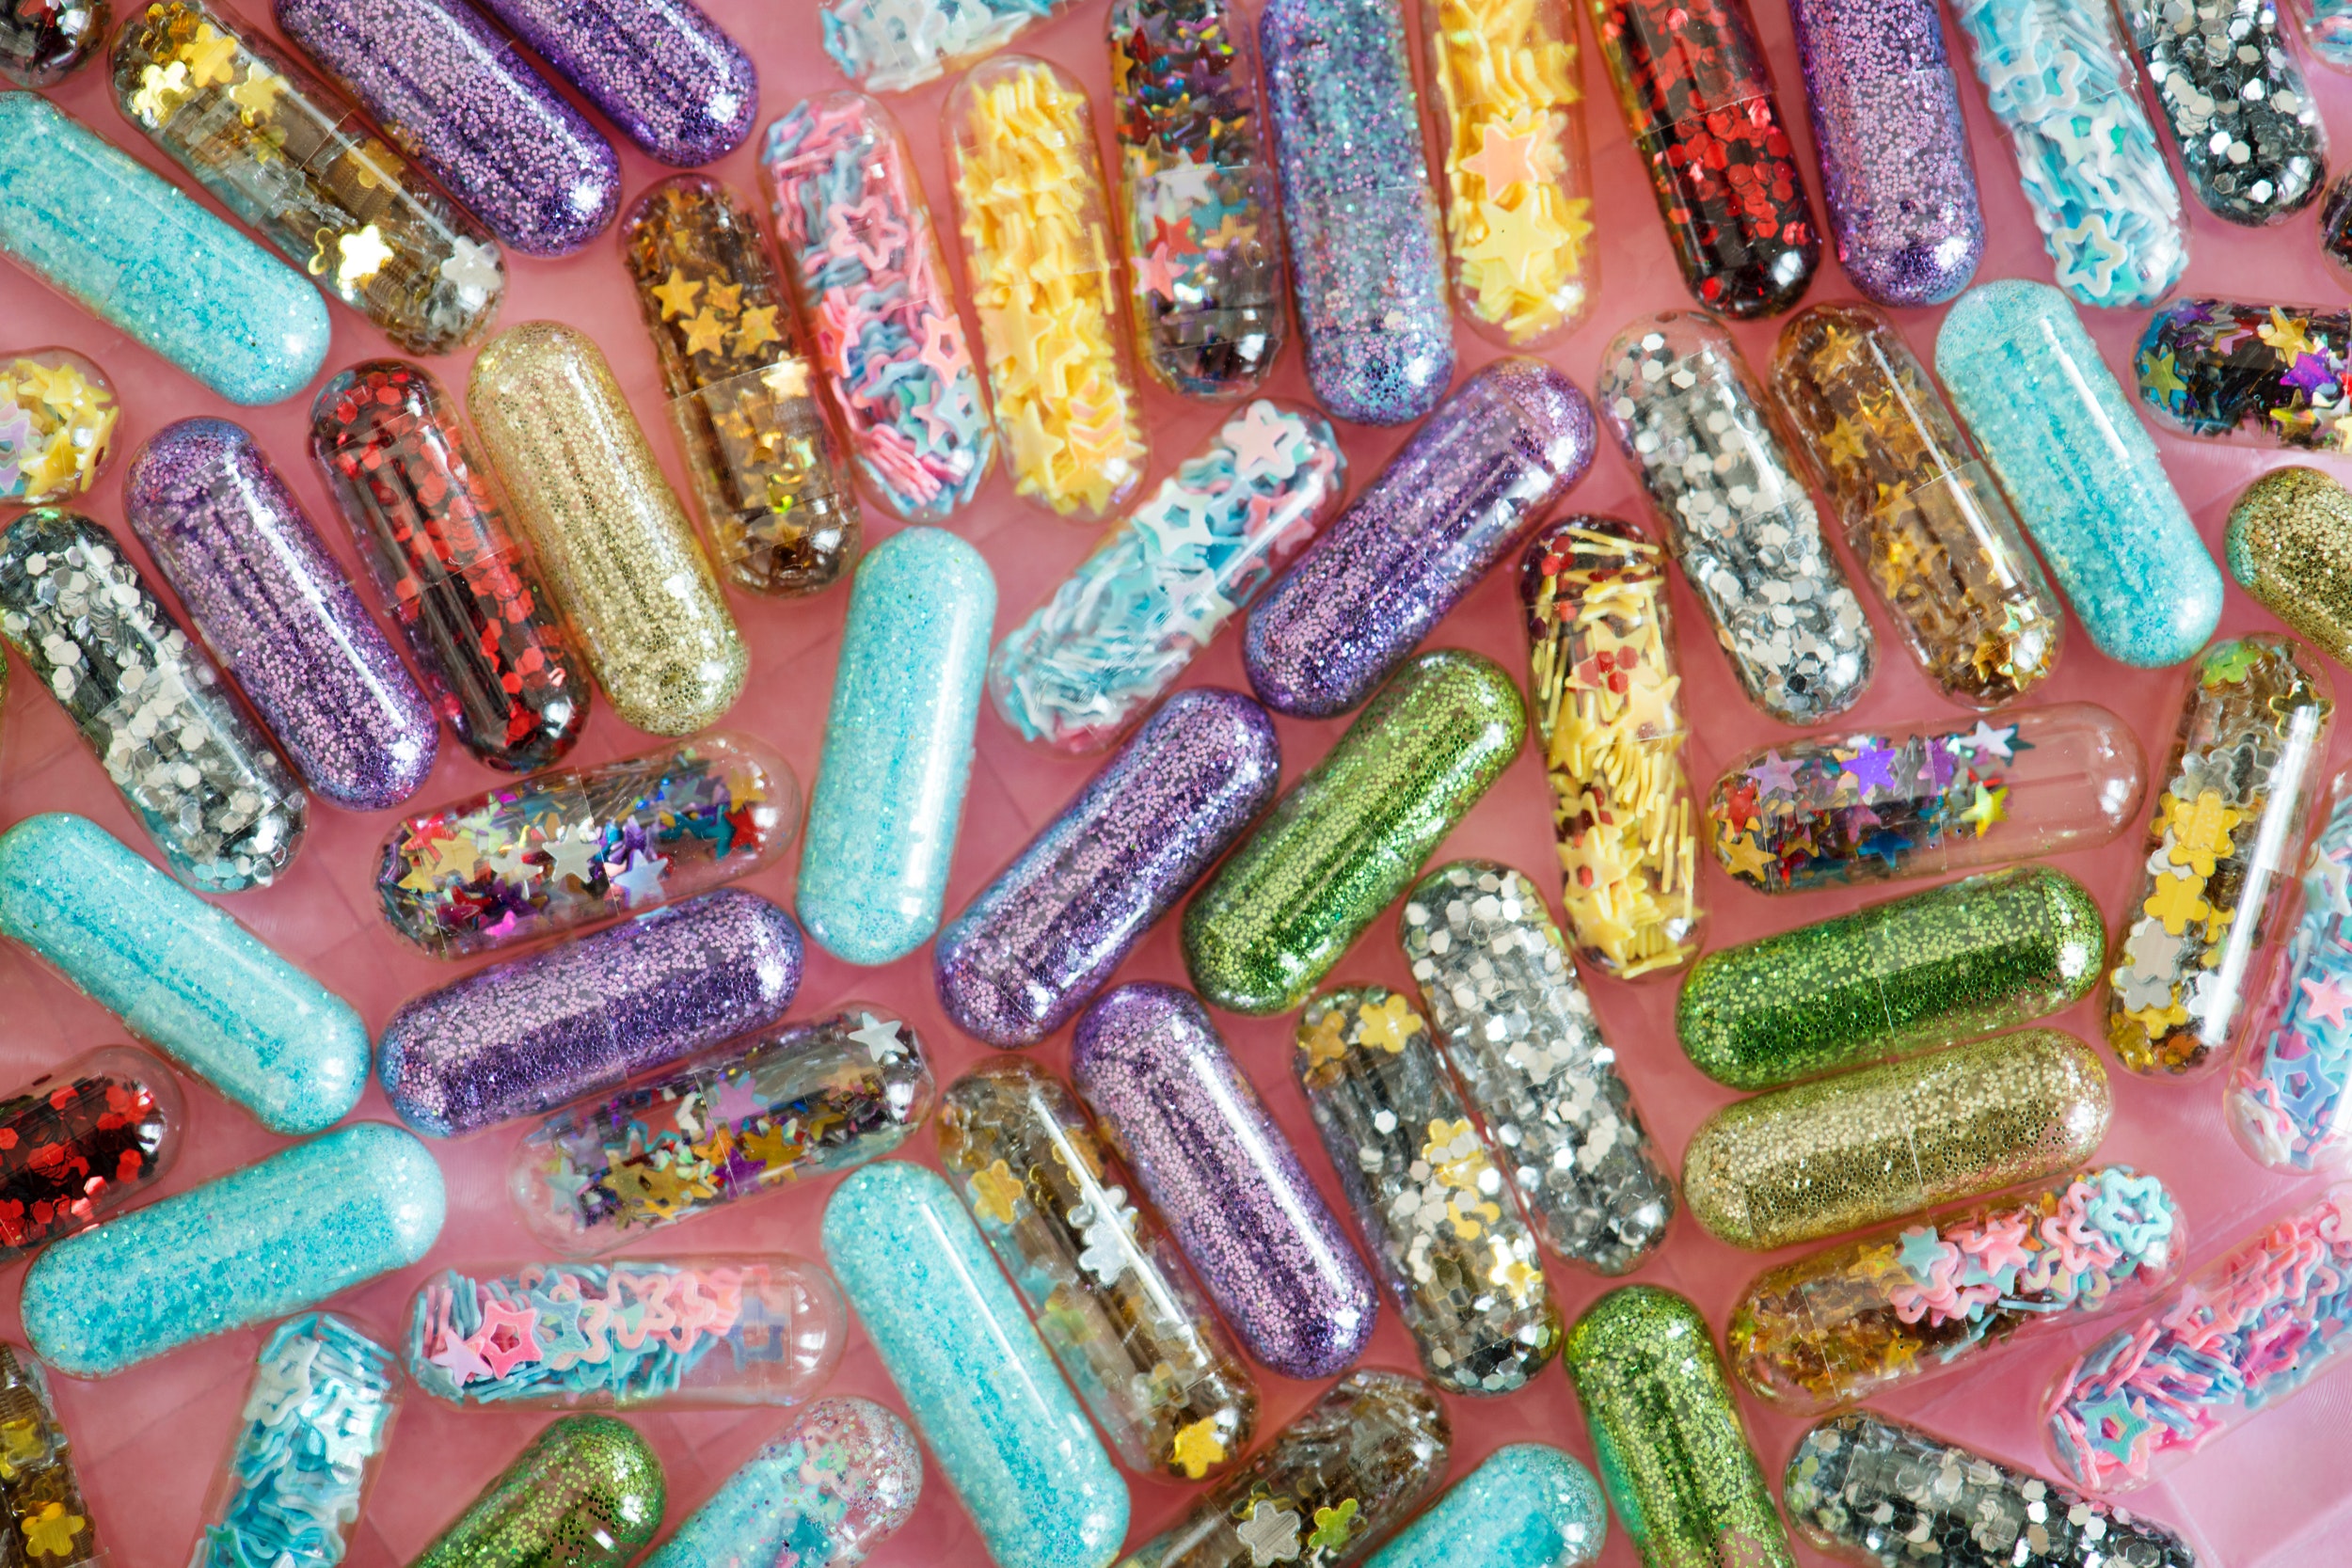 Post precedente: L’Ue vieta i glitter: la stretta sulle microplastiche